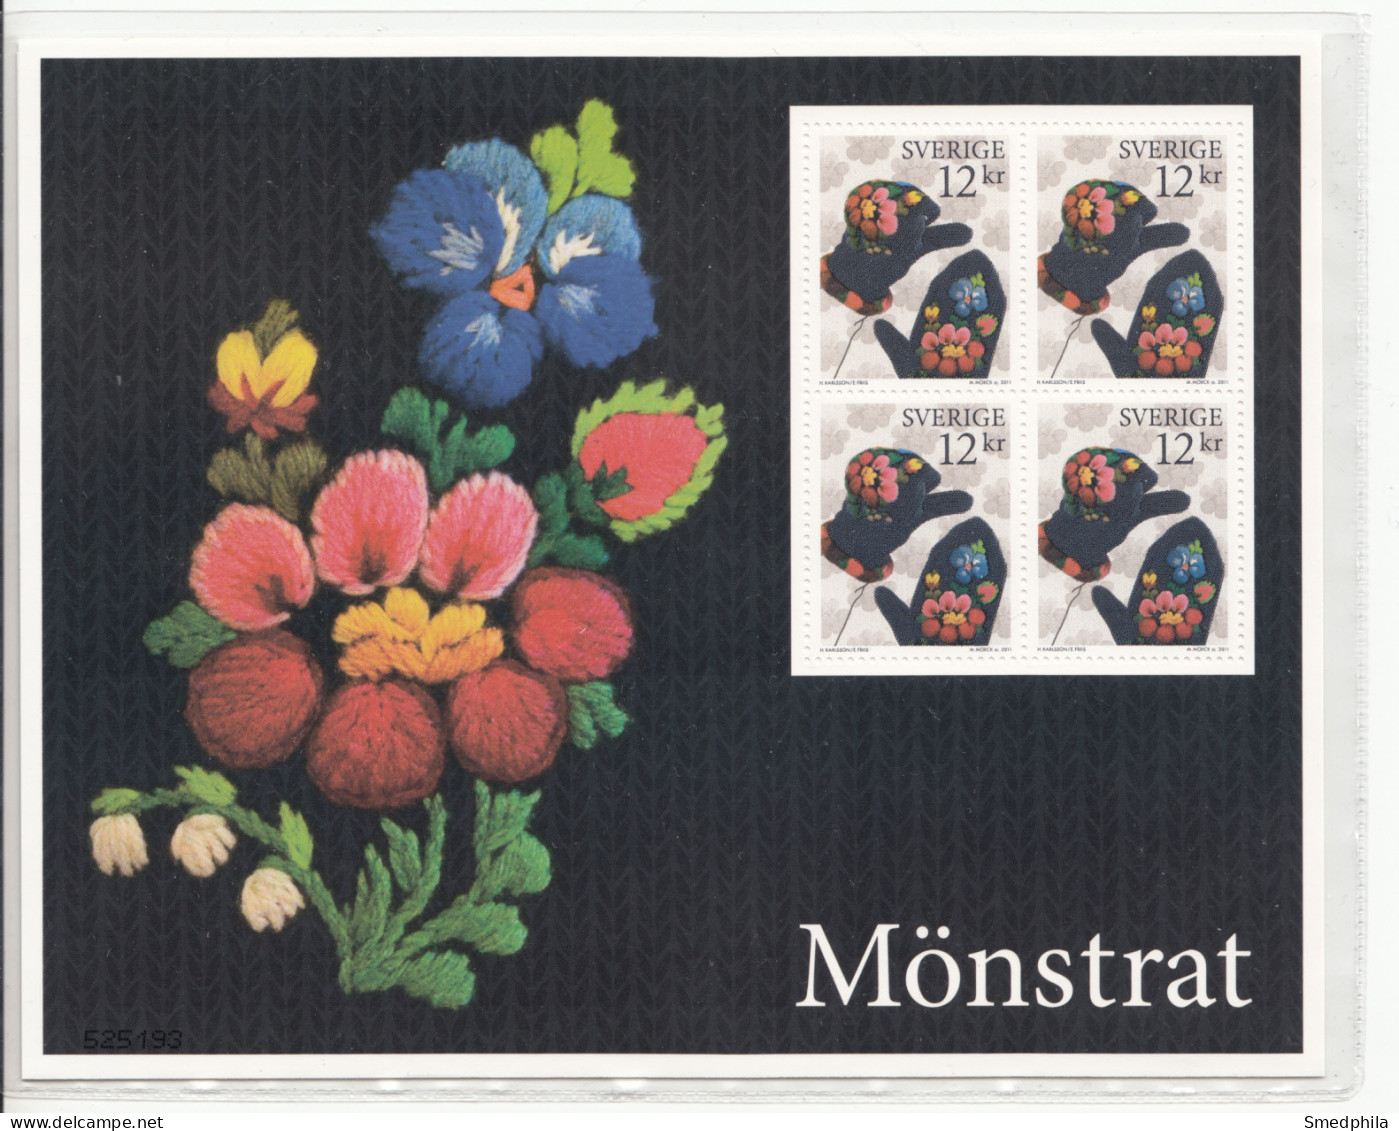 Sweden Souvenir Sheet 2011 - Knitwear MNH ** - Blocs-feuillets